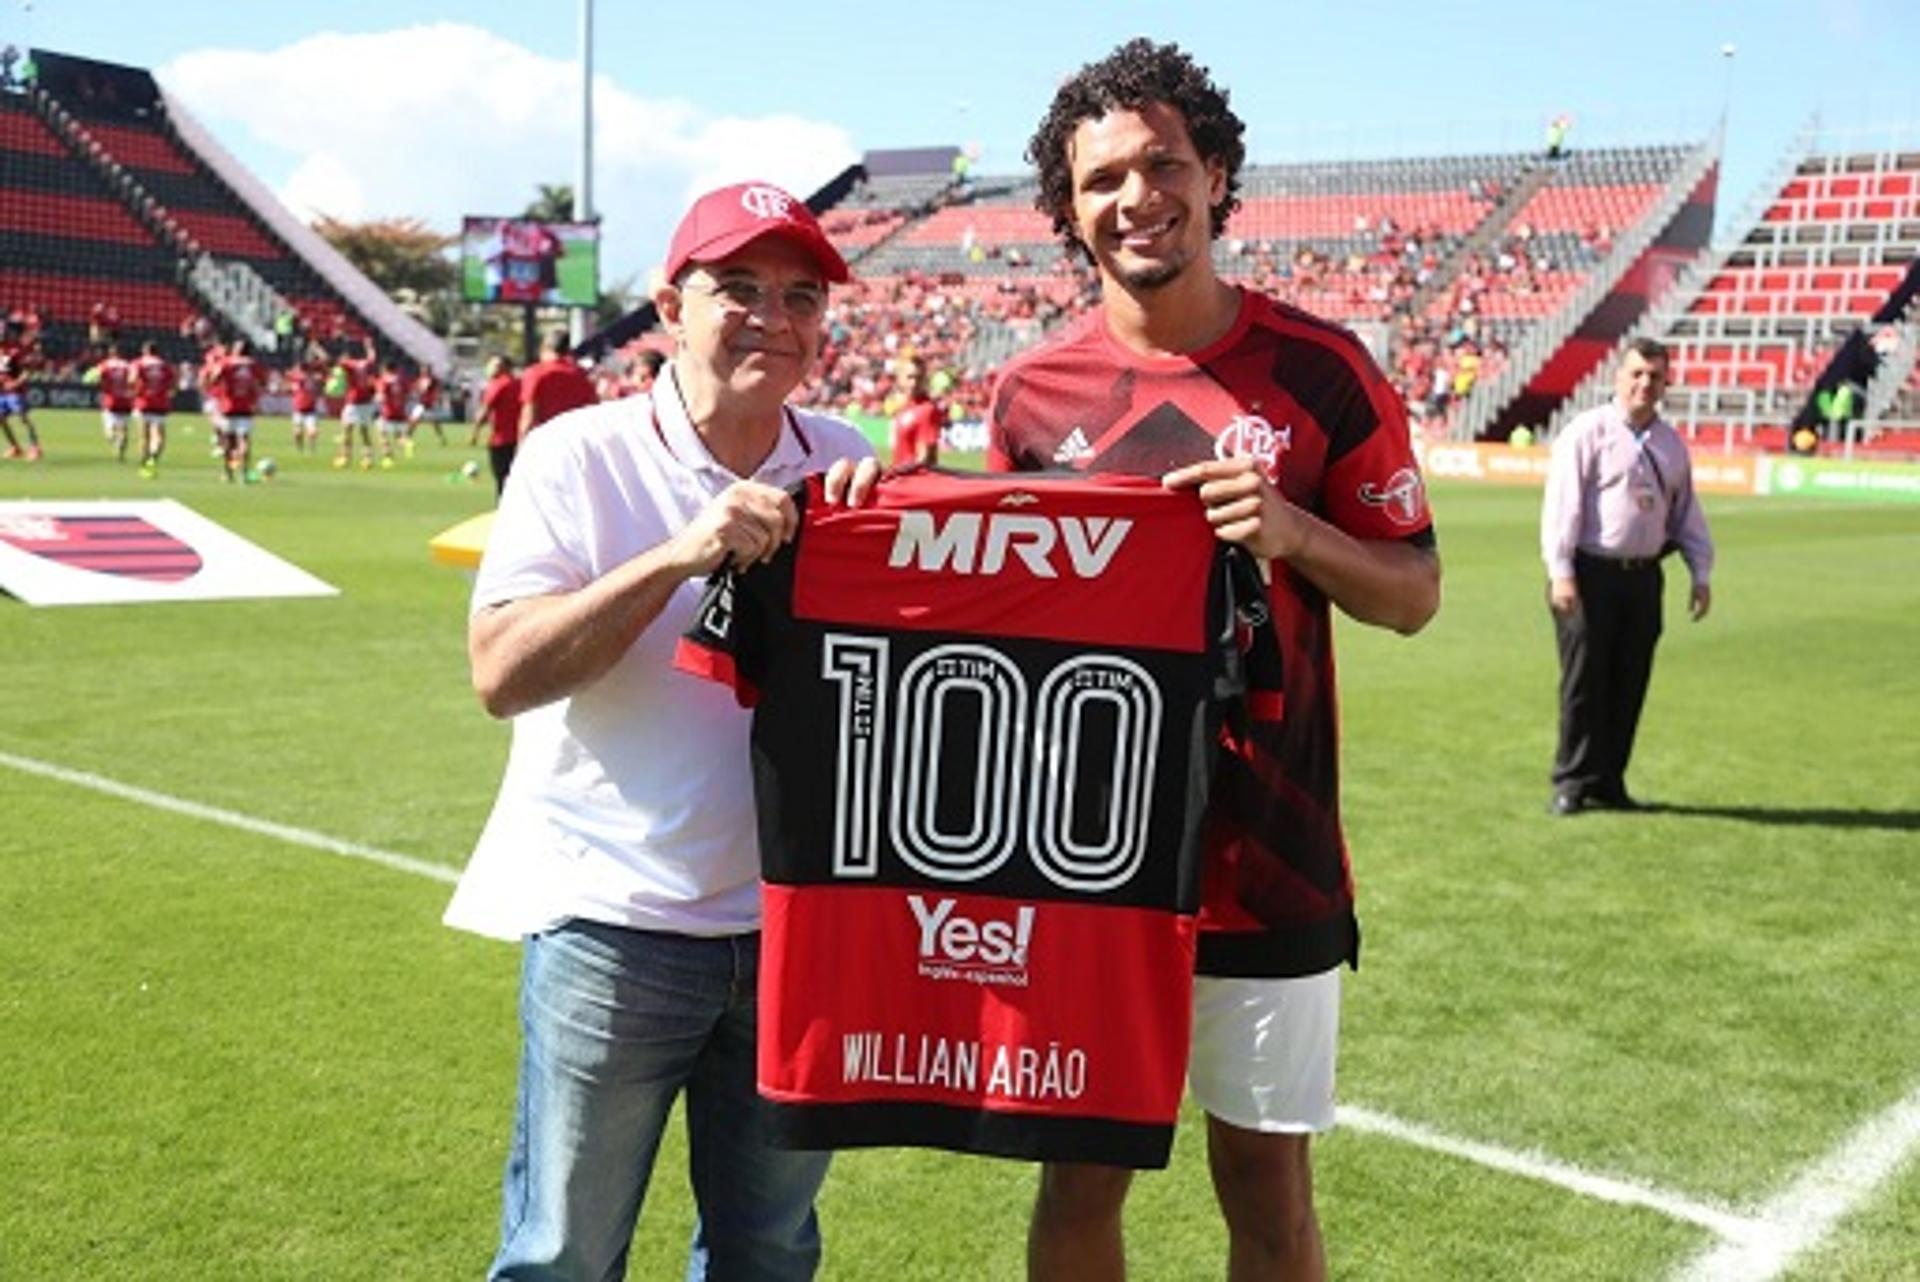 Arão recebe camisa de número 100 do presidente Eduardo Bandeira de Mello